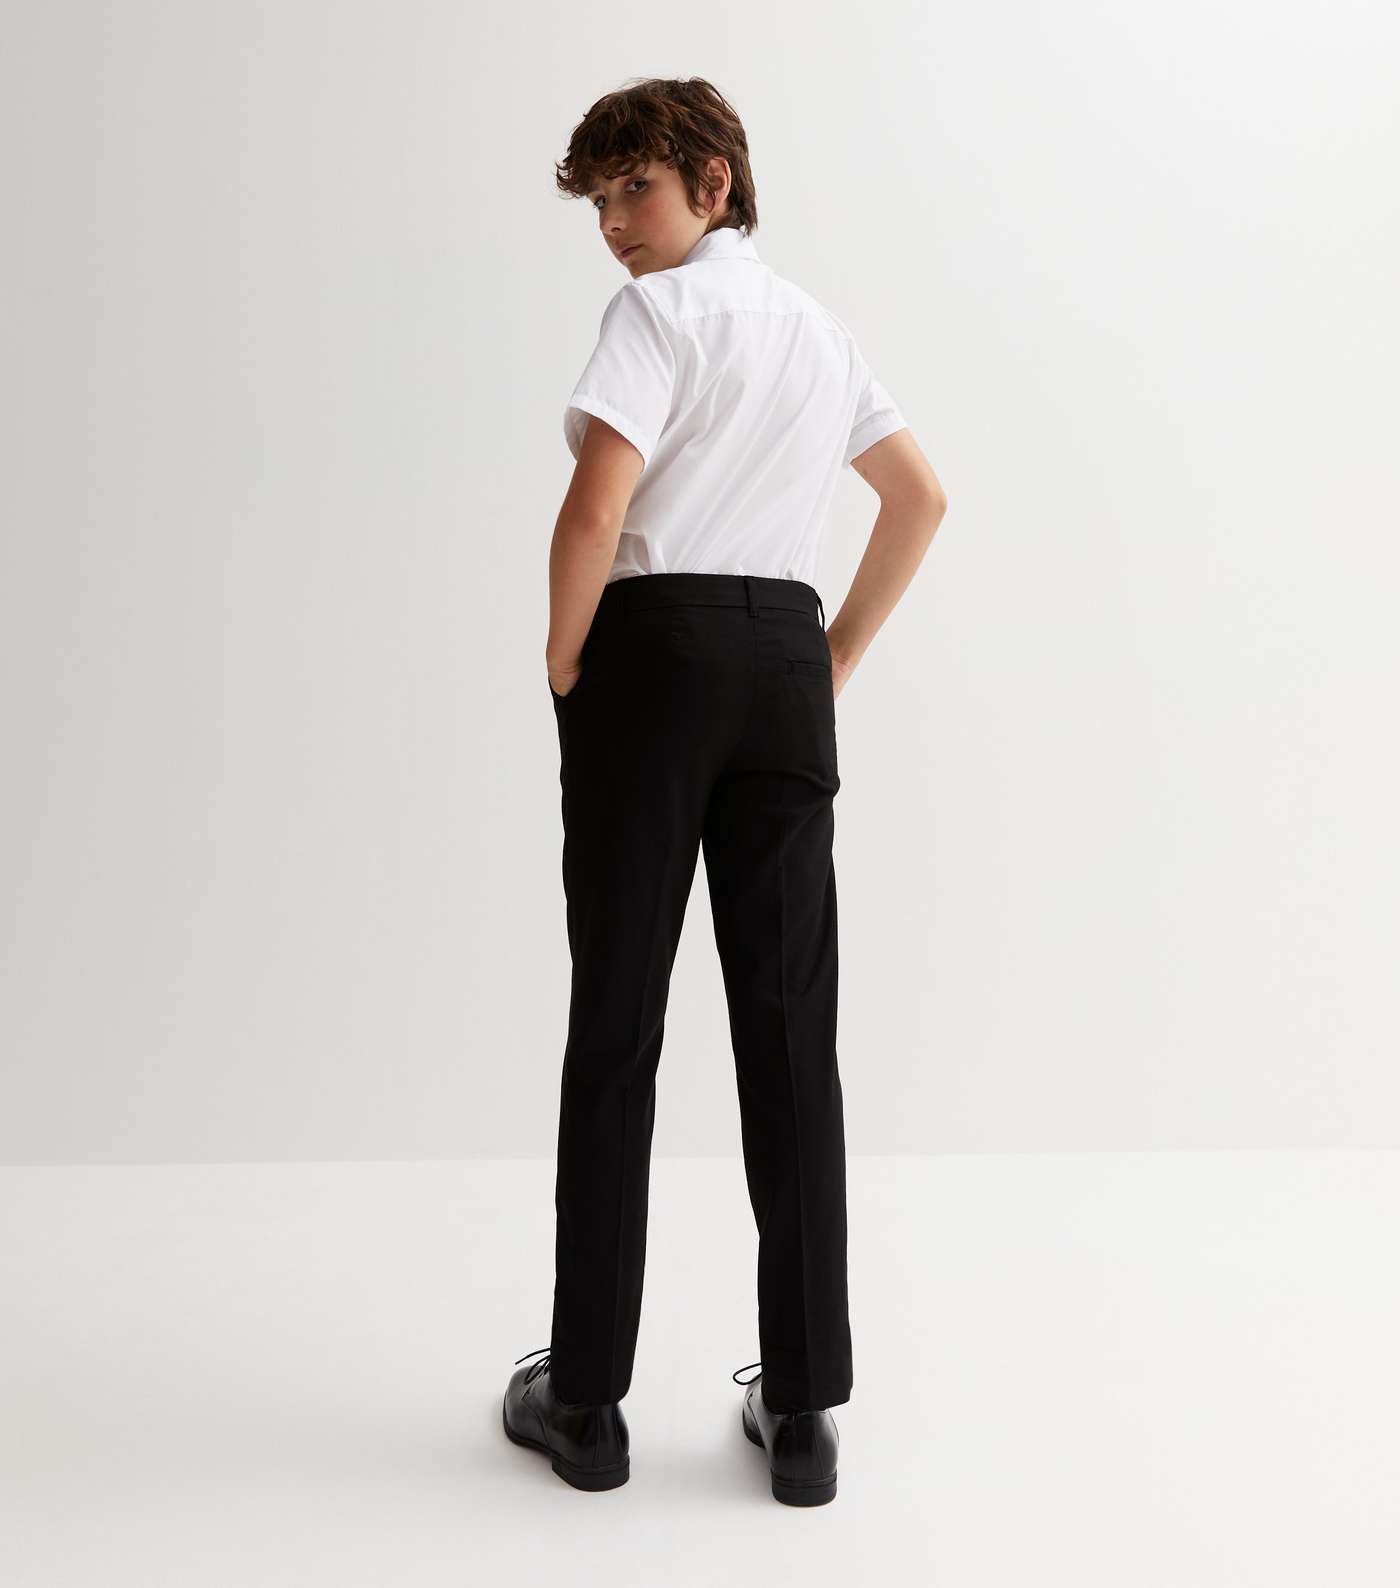 Boys Black Adjustable Waist Slim Leg School Trousers Image 4